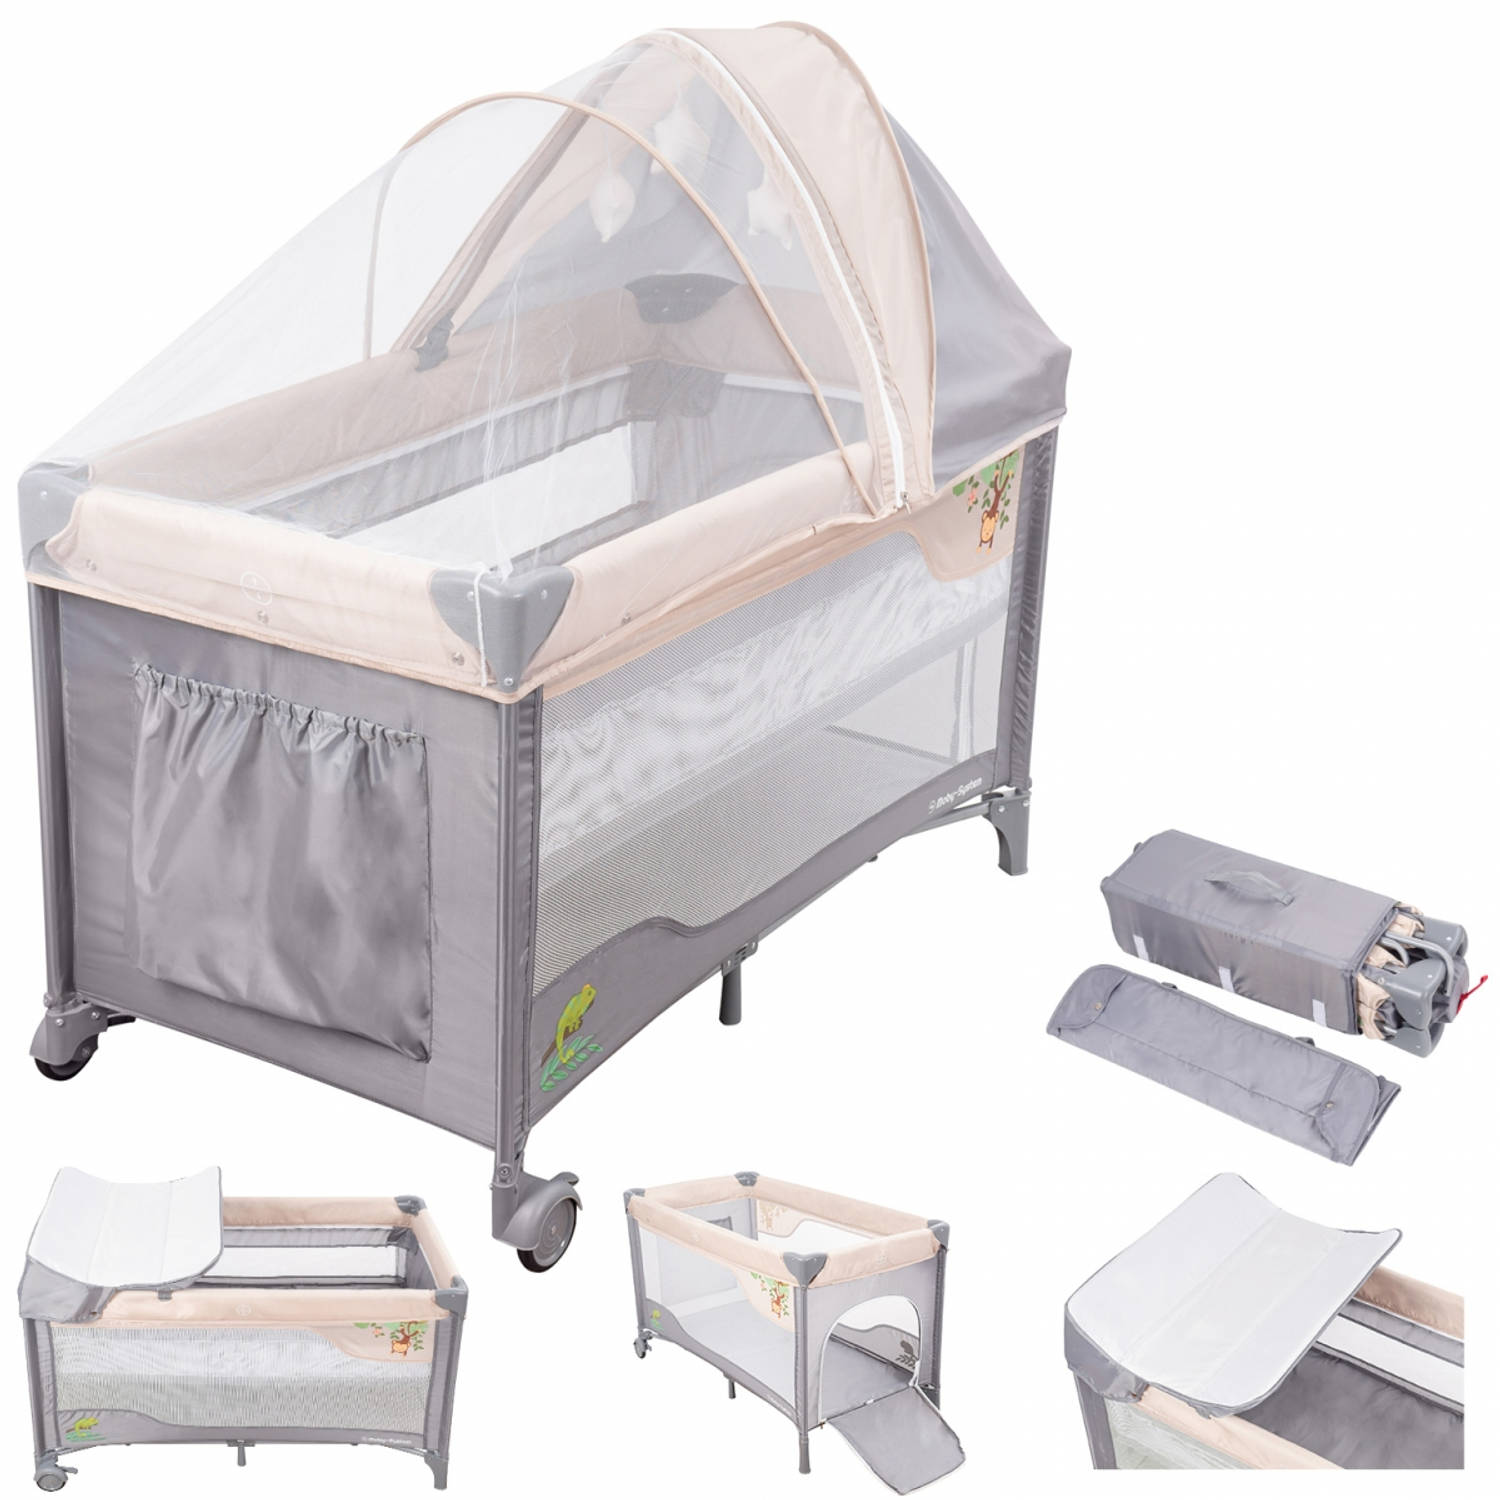 Geneeskunde Ontdek landbouw Moby System Campingbedje - Reisbedje baby - met matras commode | Blokker